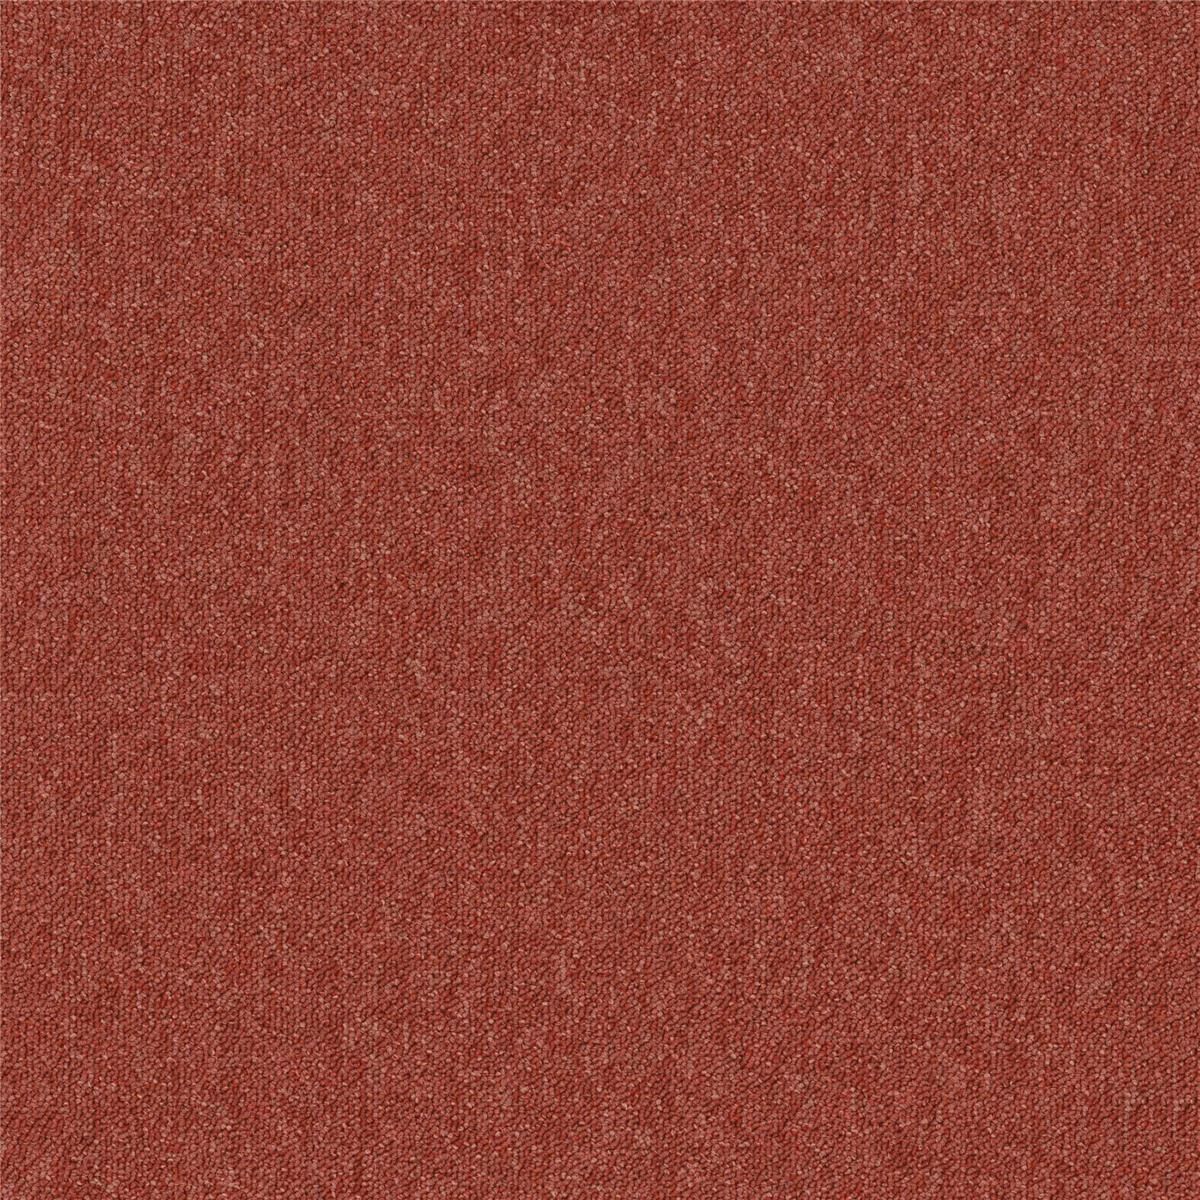 Teppichfliesen Rot 4422 Schlinge 50 x 50 cm Essence Pure AD07 Desso